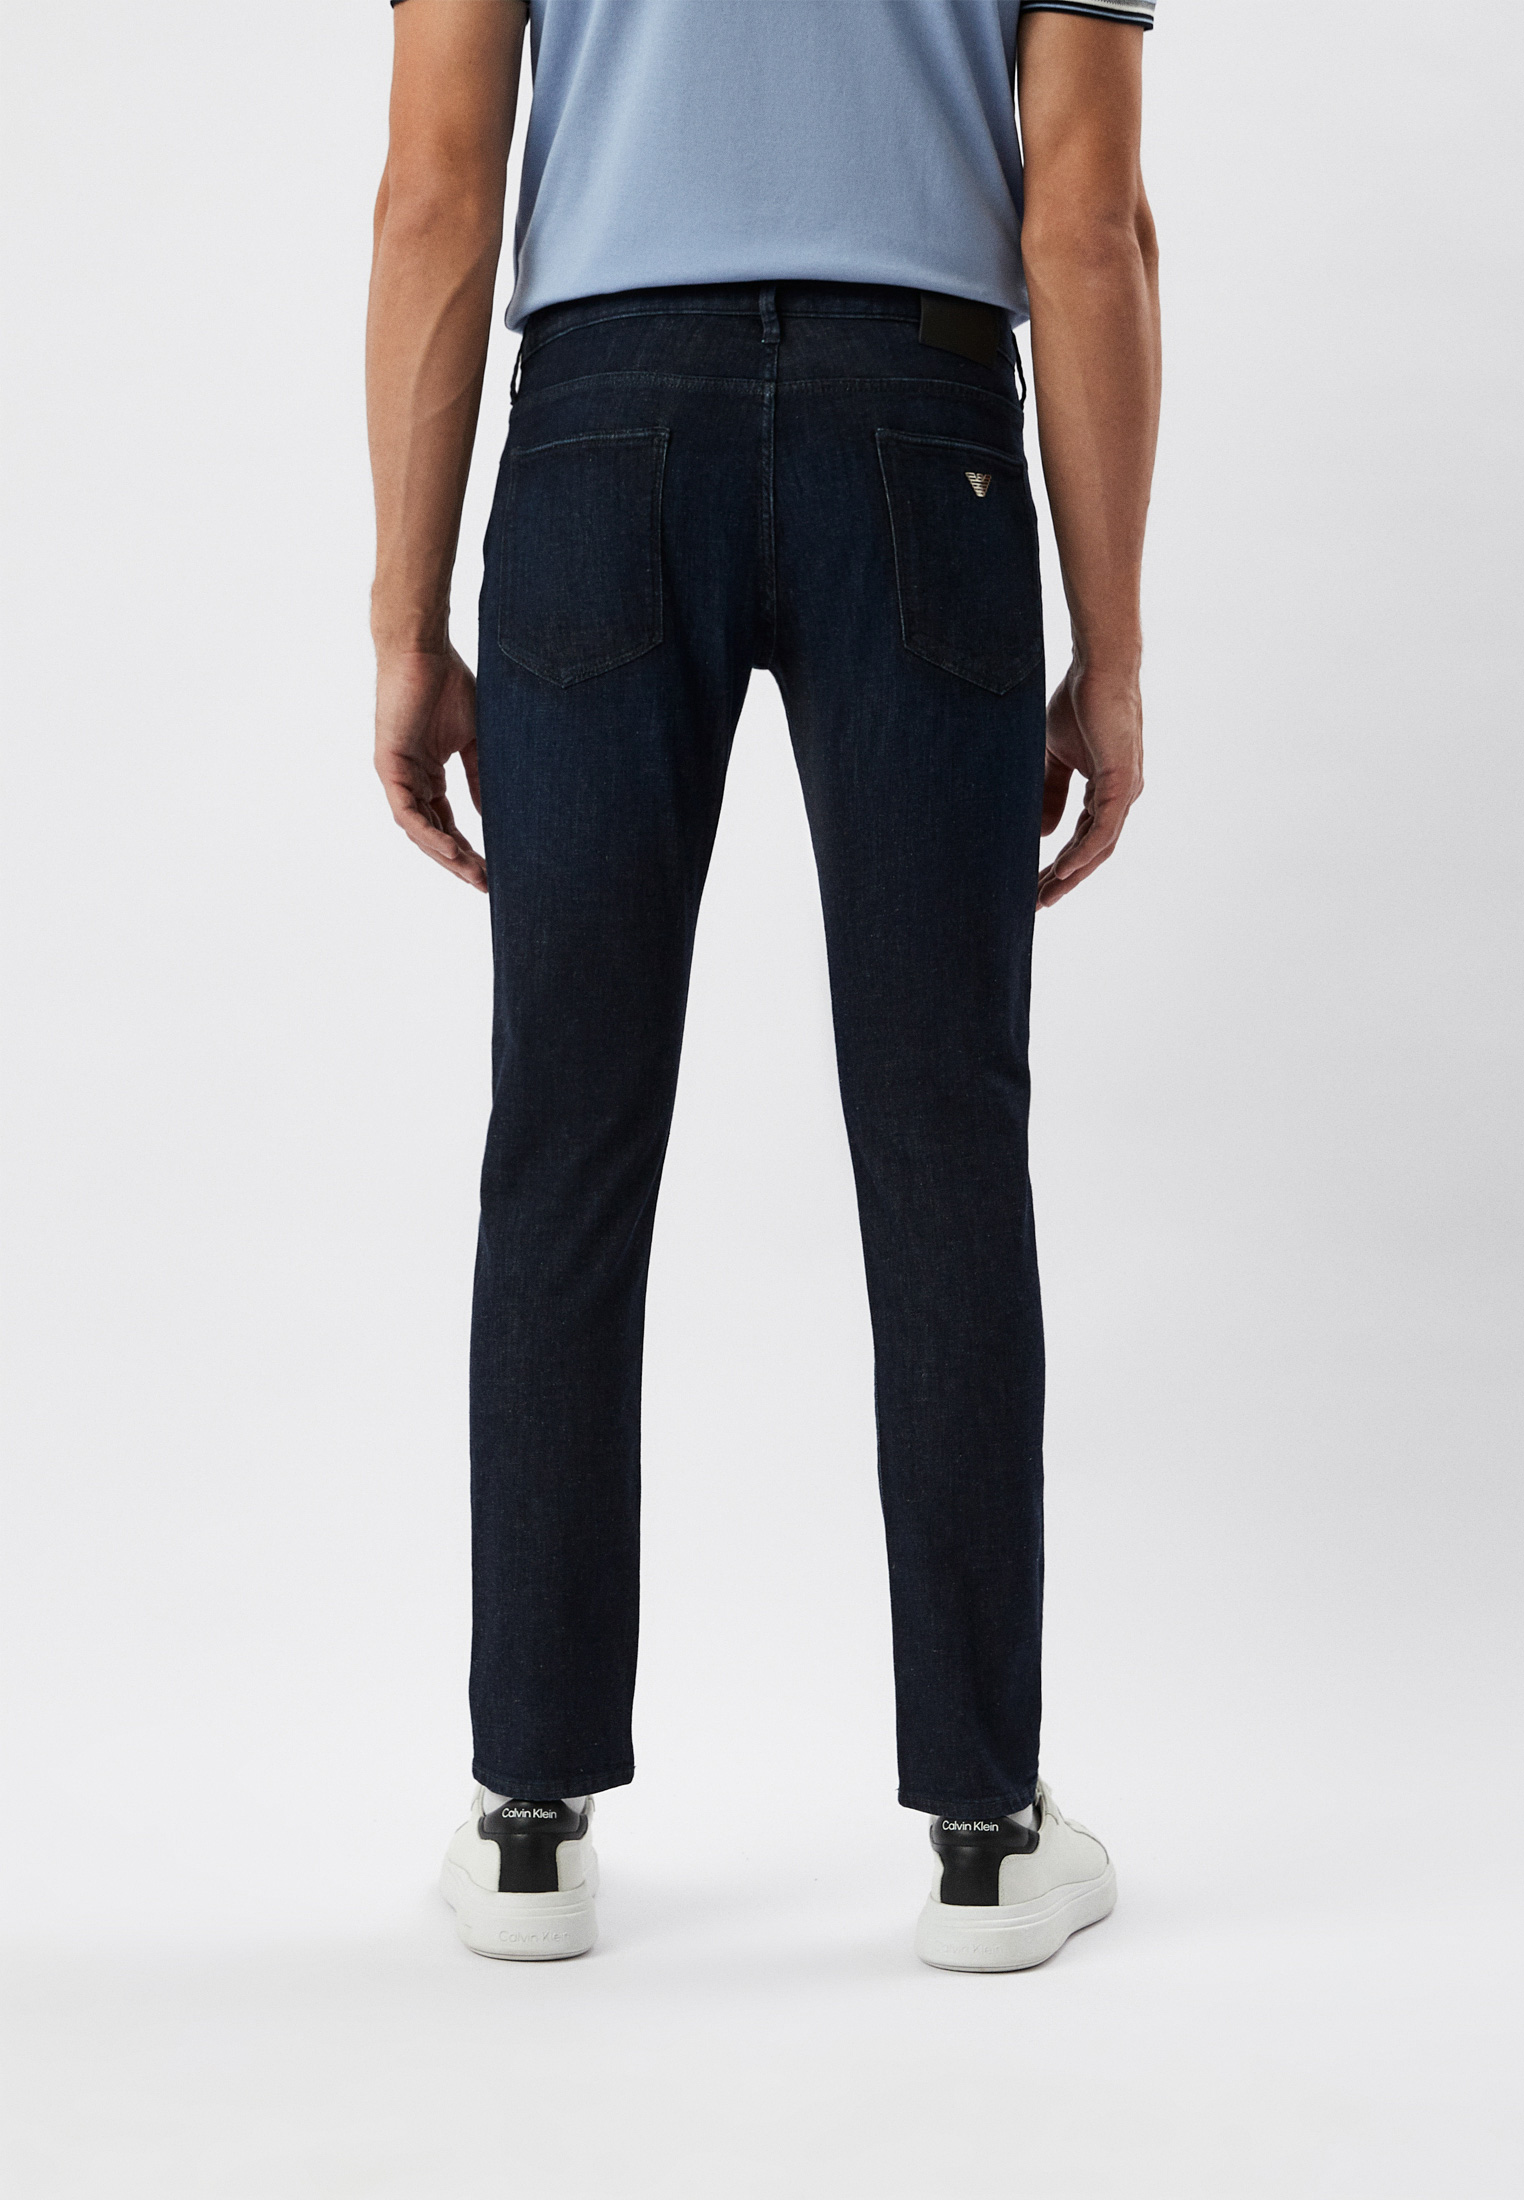 Мужские зауженные джинсы Emporio Armani (Эмпорио Армани) 3R1J06 1D16Z: изображение 3